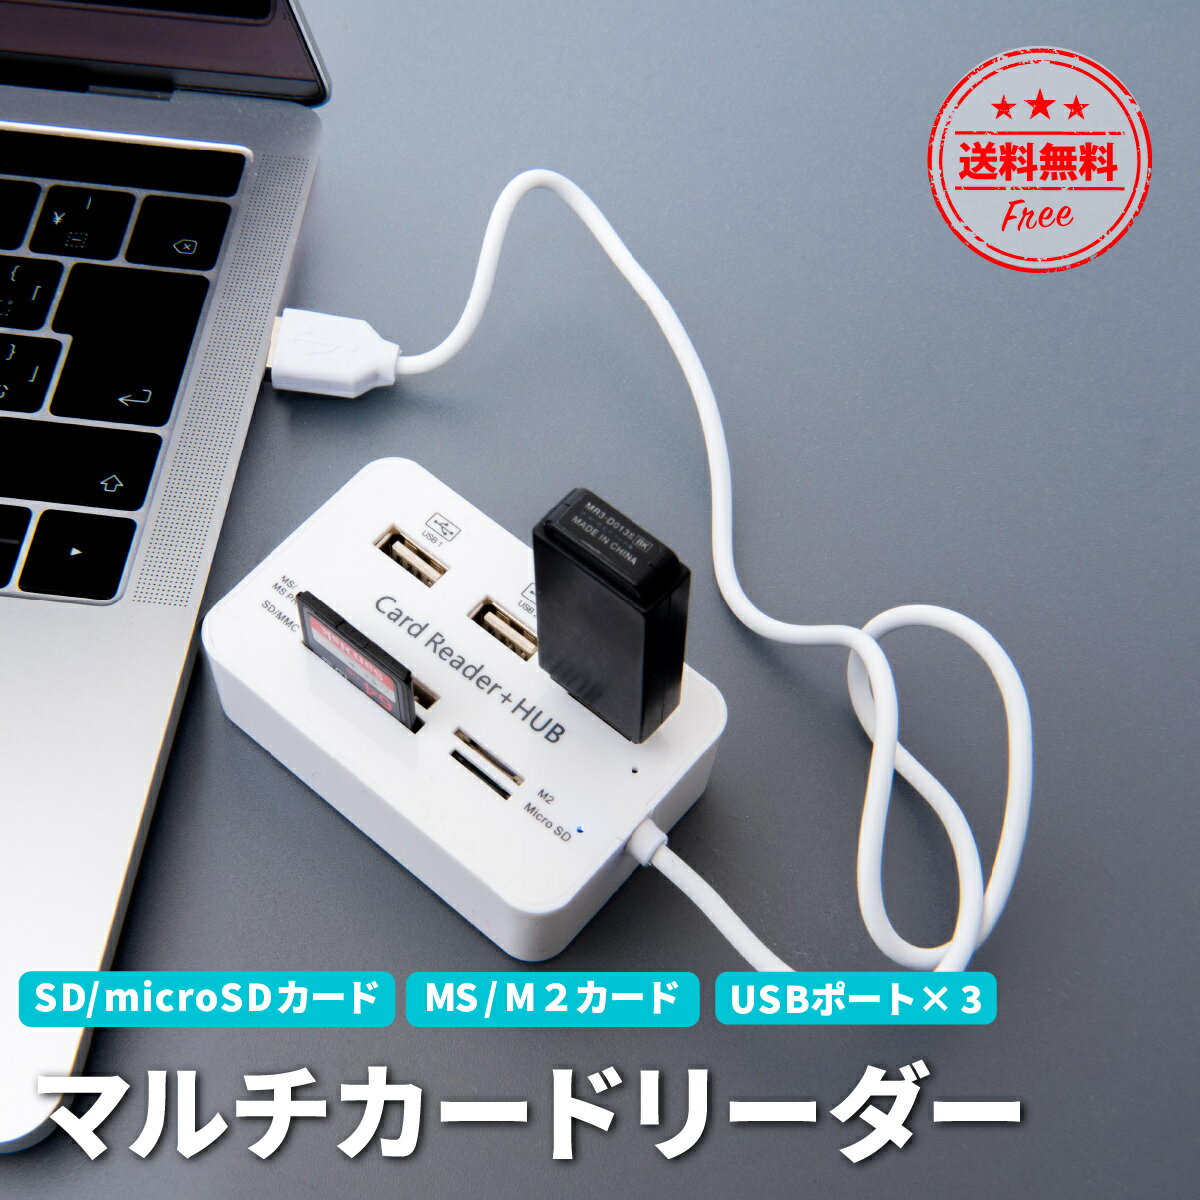 【送料無料】マルチカードリーダー SDカードリーダー USB